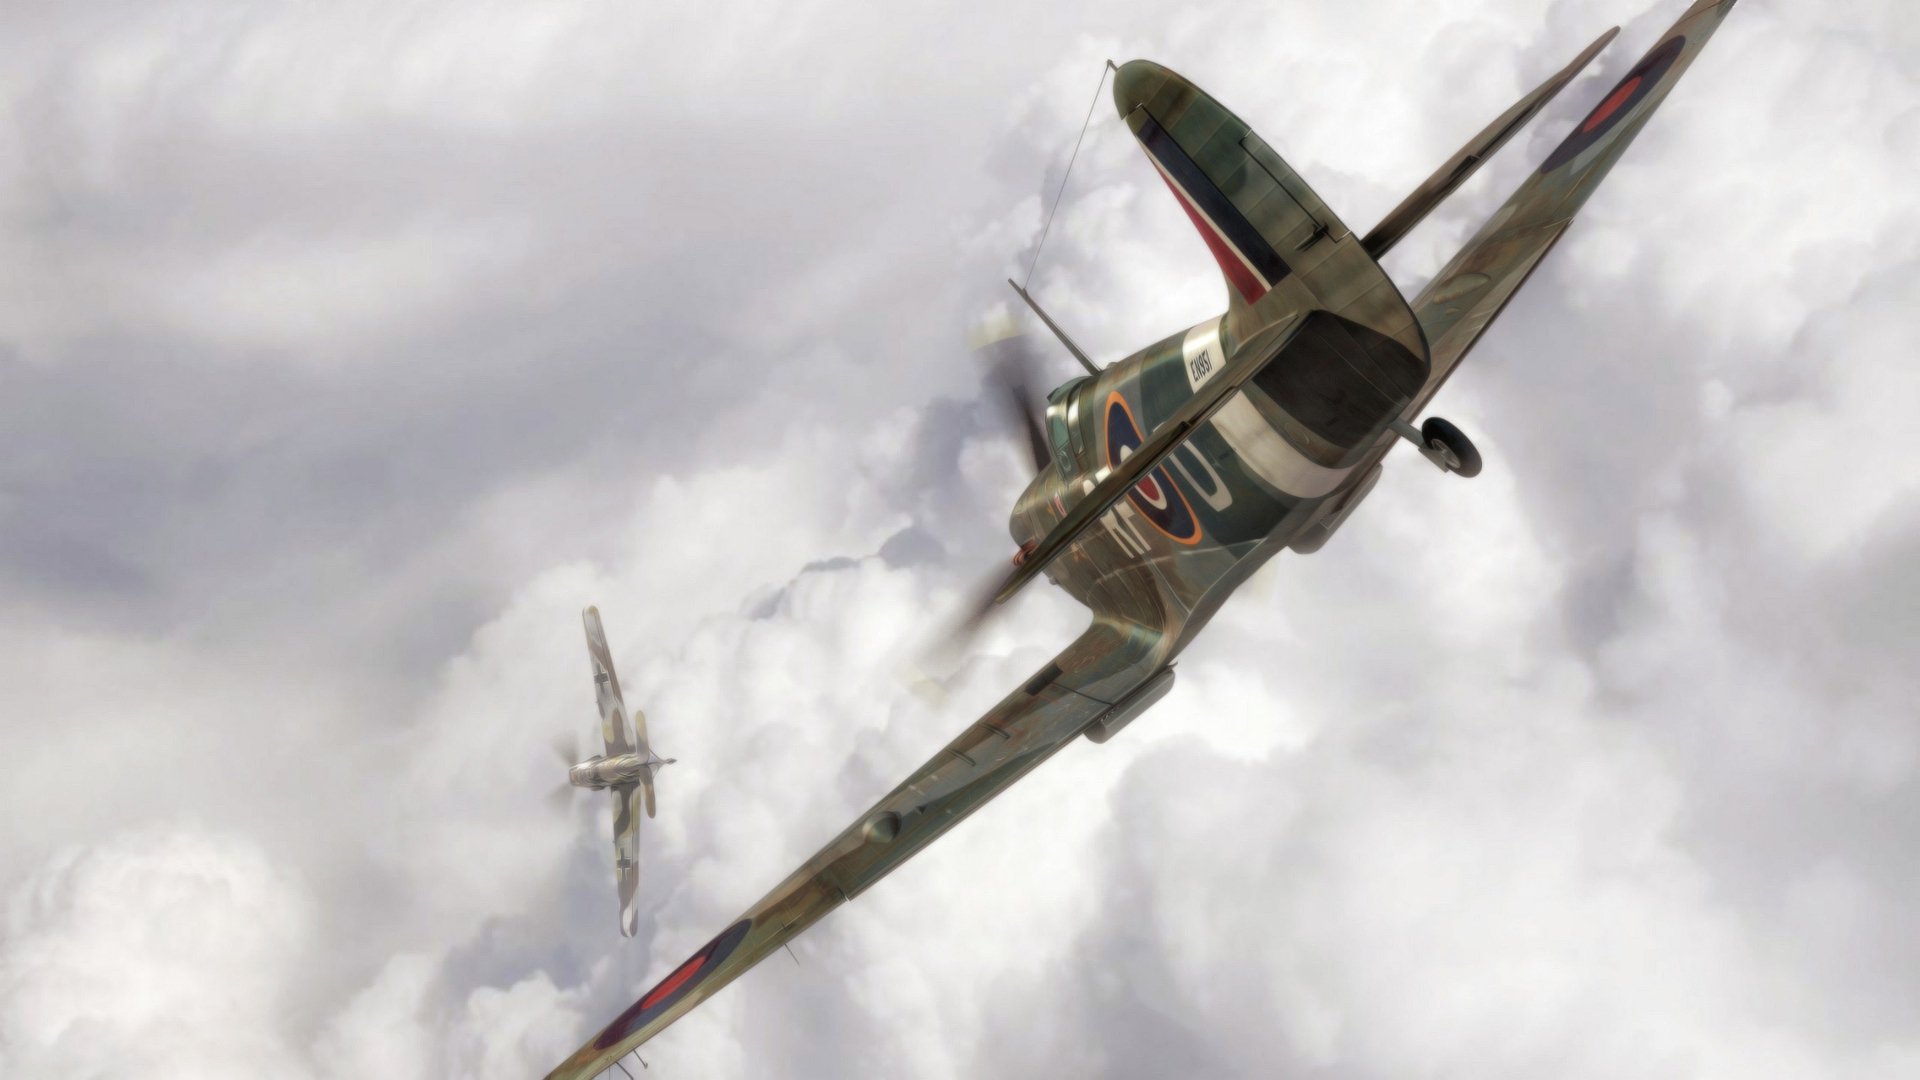 Hd Wallpaper Dogfight Spitfire Bf 109 Aviation War Ww2 Artwork Aircraft